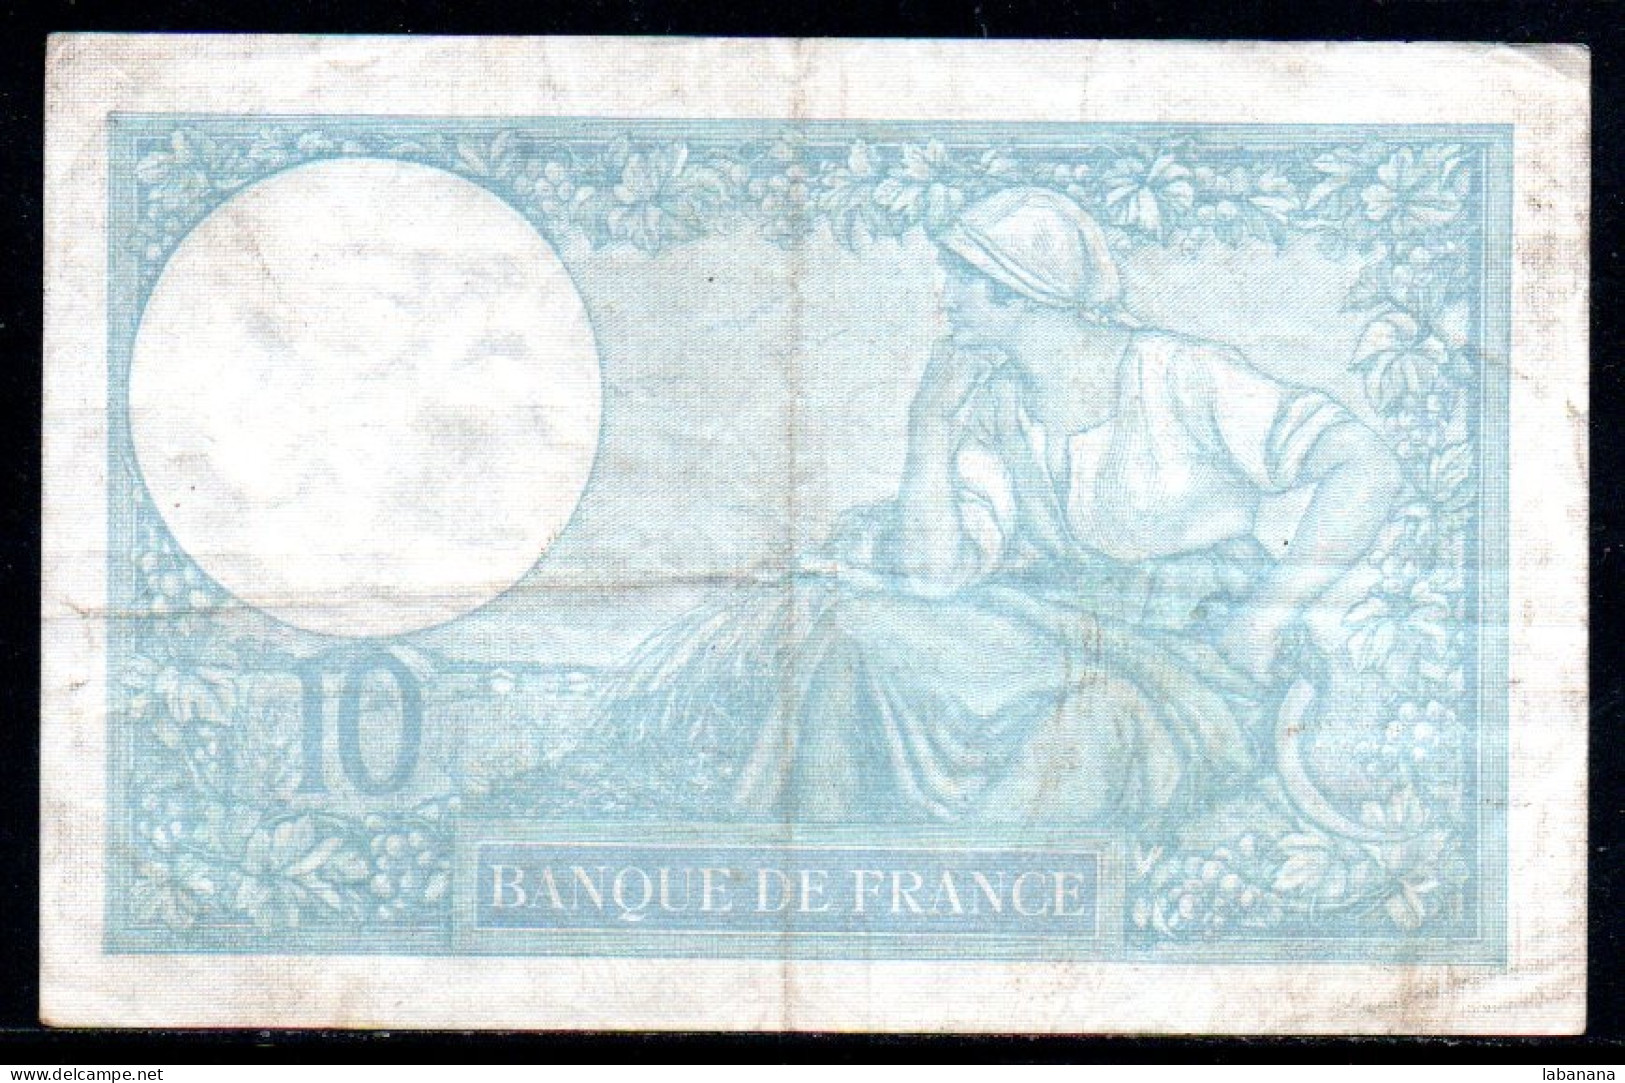 554-France Billet De 10 Francs 1940YG L79111 - 10 F 1916-1942 ''Minerve''